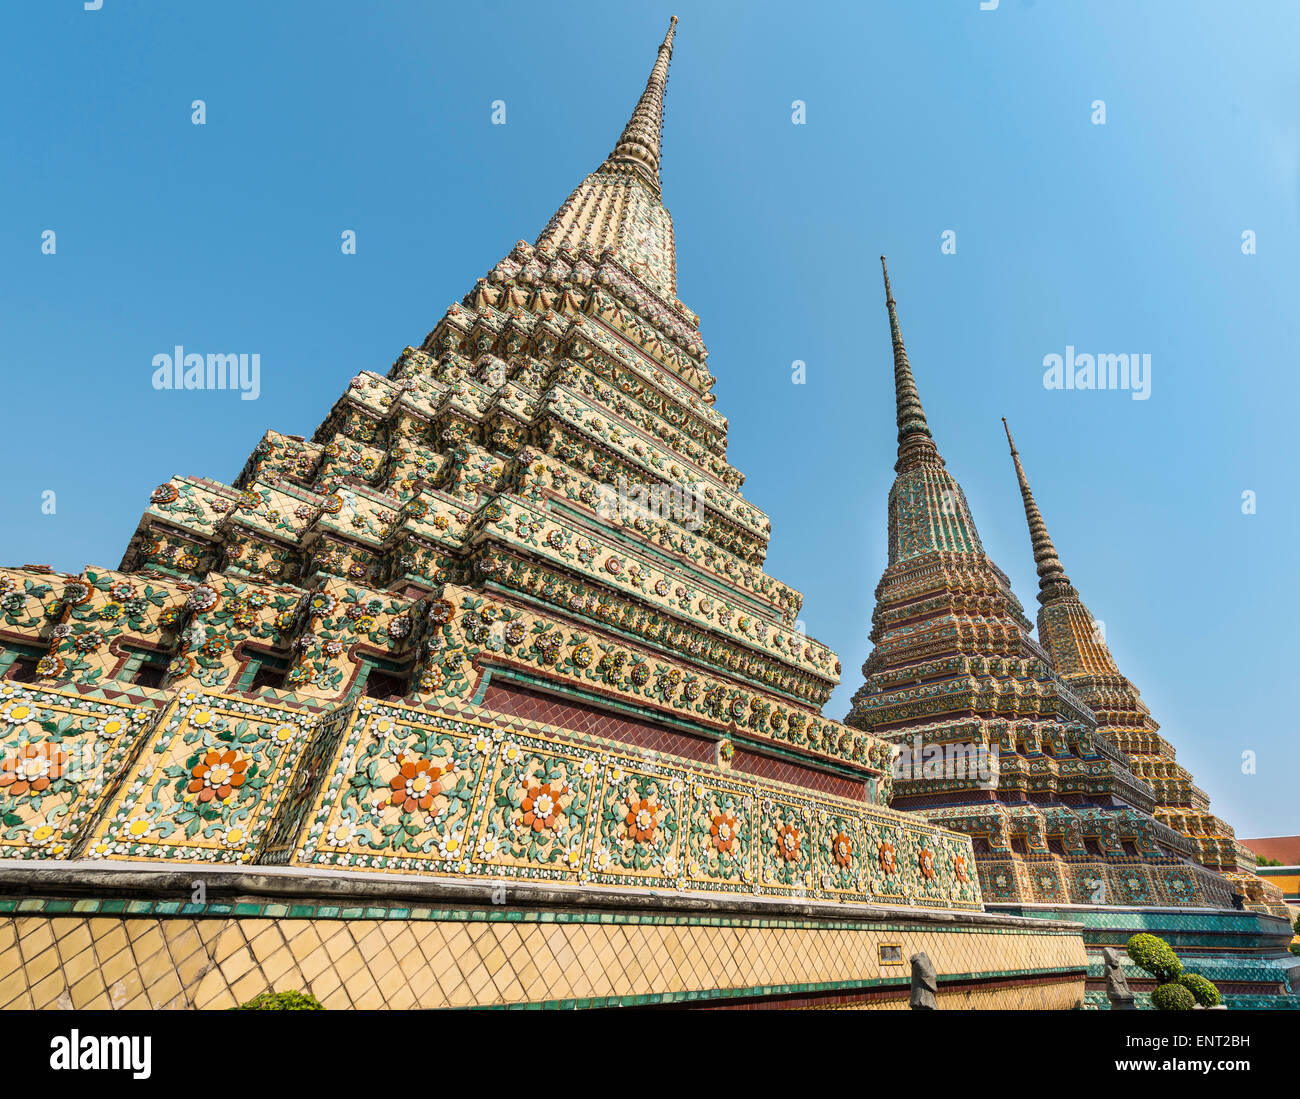 Three Chedis, Phra Maha Chedi Si Ratchakan, Wat Pho temple, Wat Phra Chetuphon, Bangkok, Thailand Stock Photo